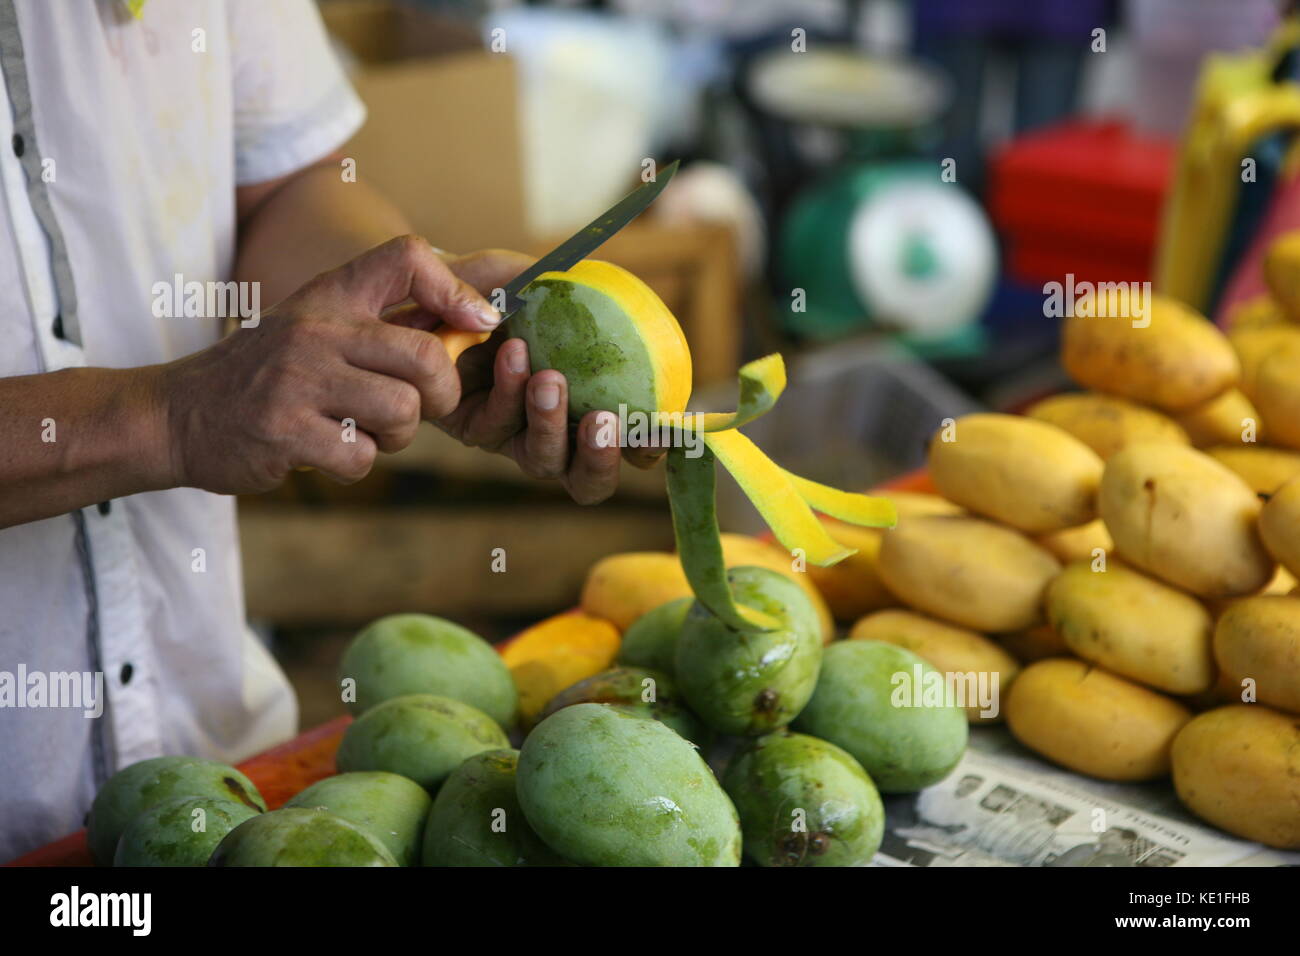 mann der mit Messer eine Mango schält am Marktstand - Man with knife a mango peels at market Stock Photo